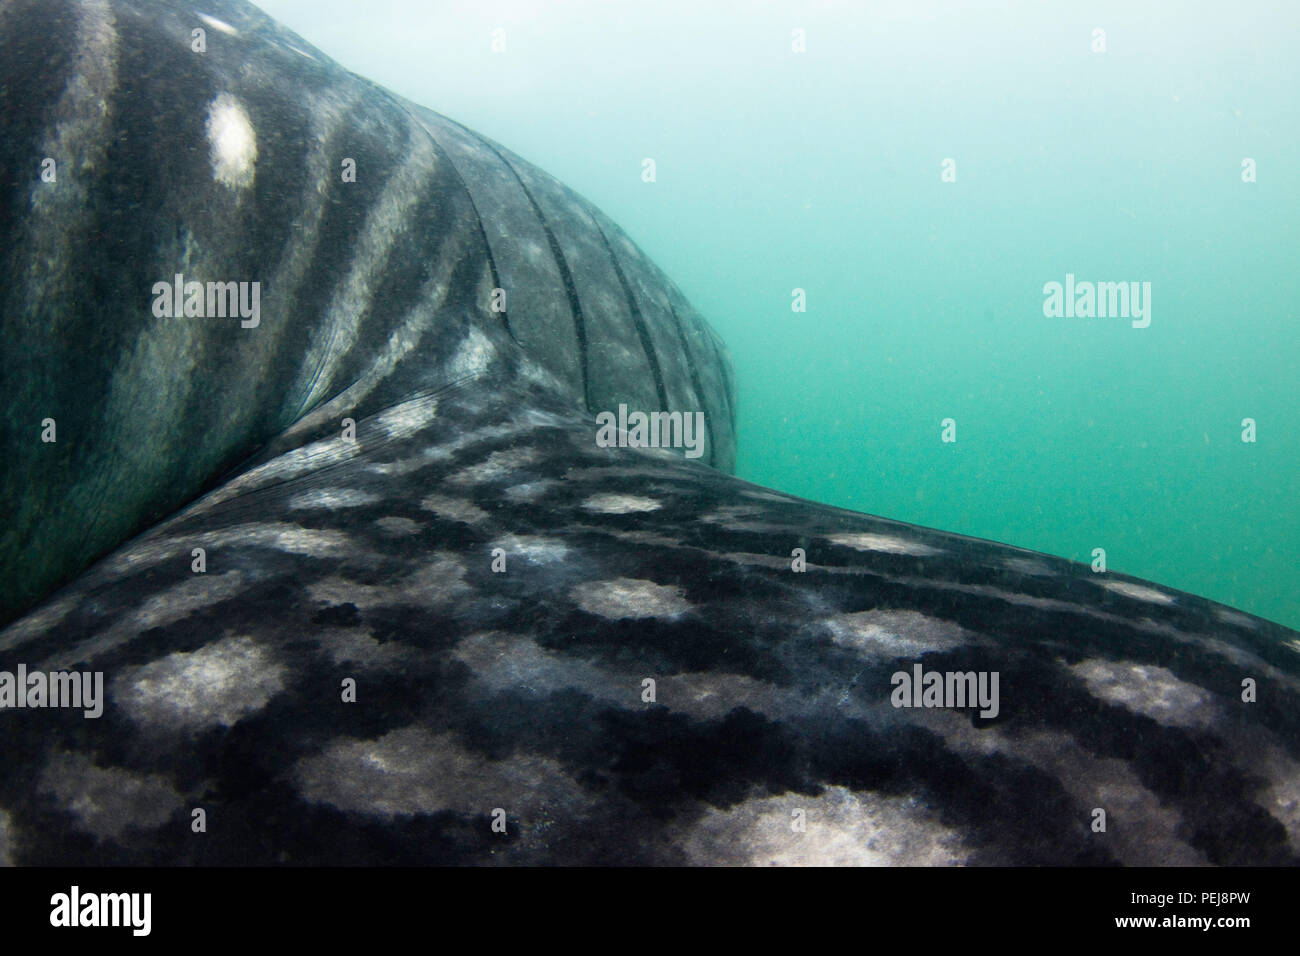 Un tir sur la nageoire pectorale de la plus grande des poissons, un requin-baleine, Rhiniodon typus, aux Philippines, au large Donsol dans. Les requins-baleines arrivent anuellement pour nourrir ici Banque D'Images